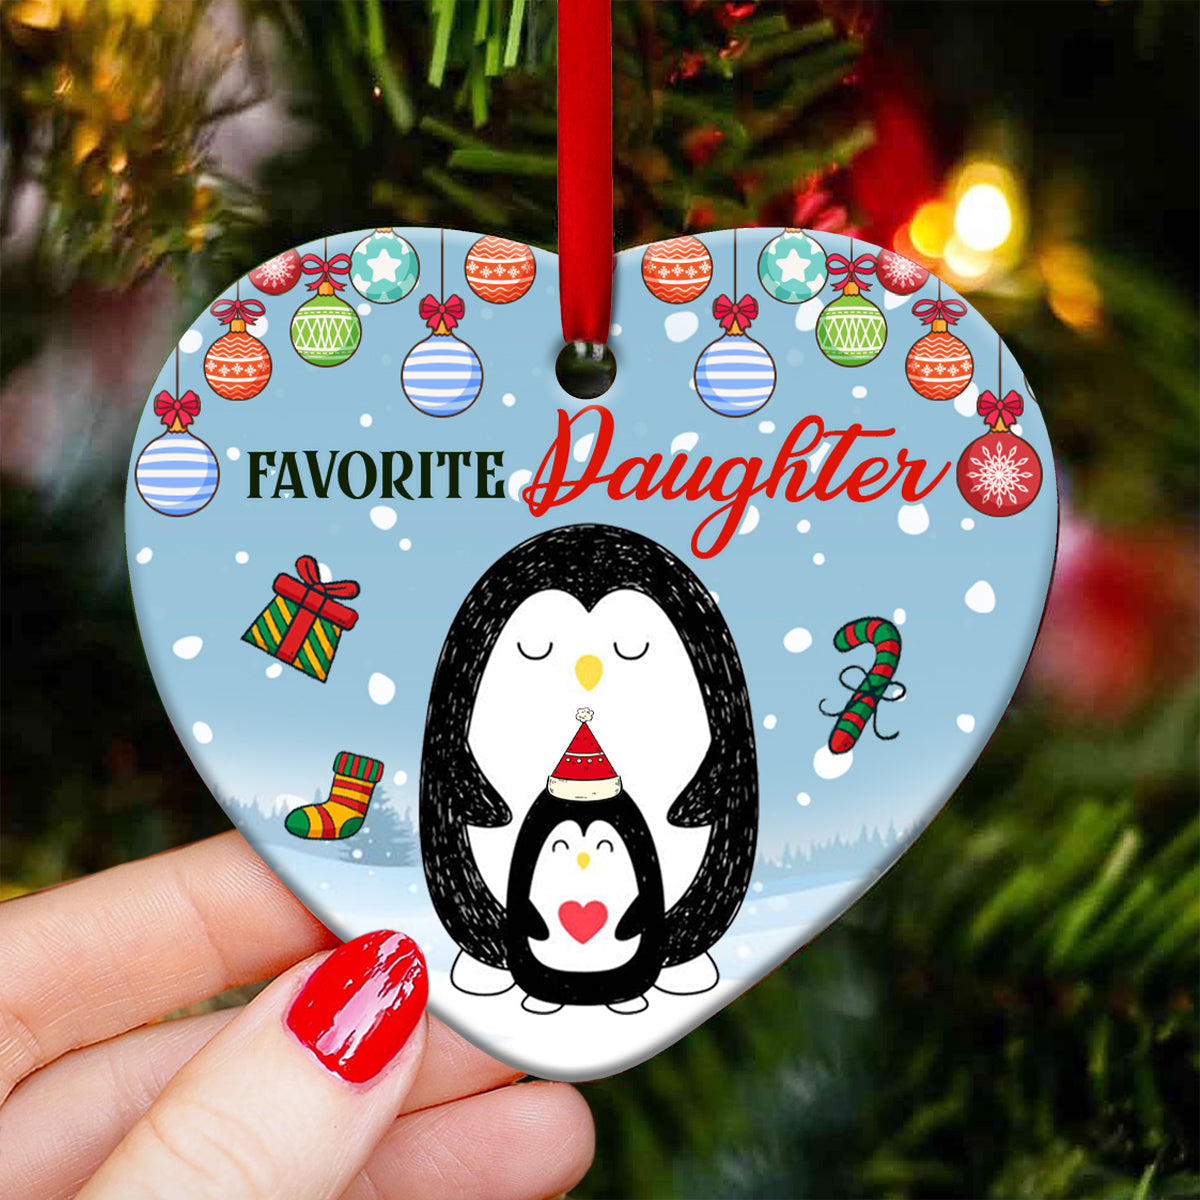 Penguin Favorite Daughter Heart Ceramic Ornament - Christmas Ornament - Christmas Gift